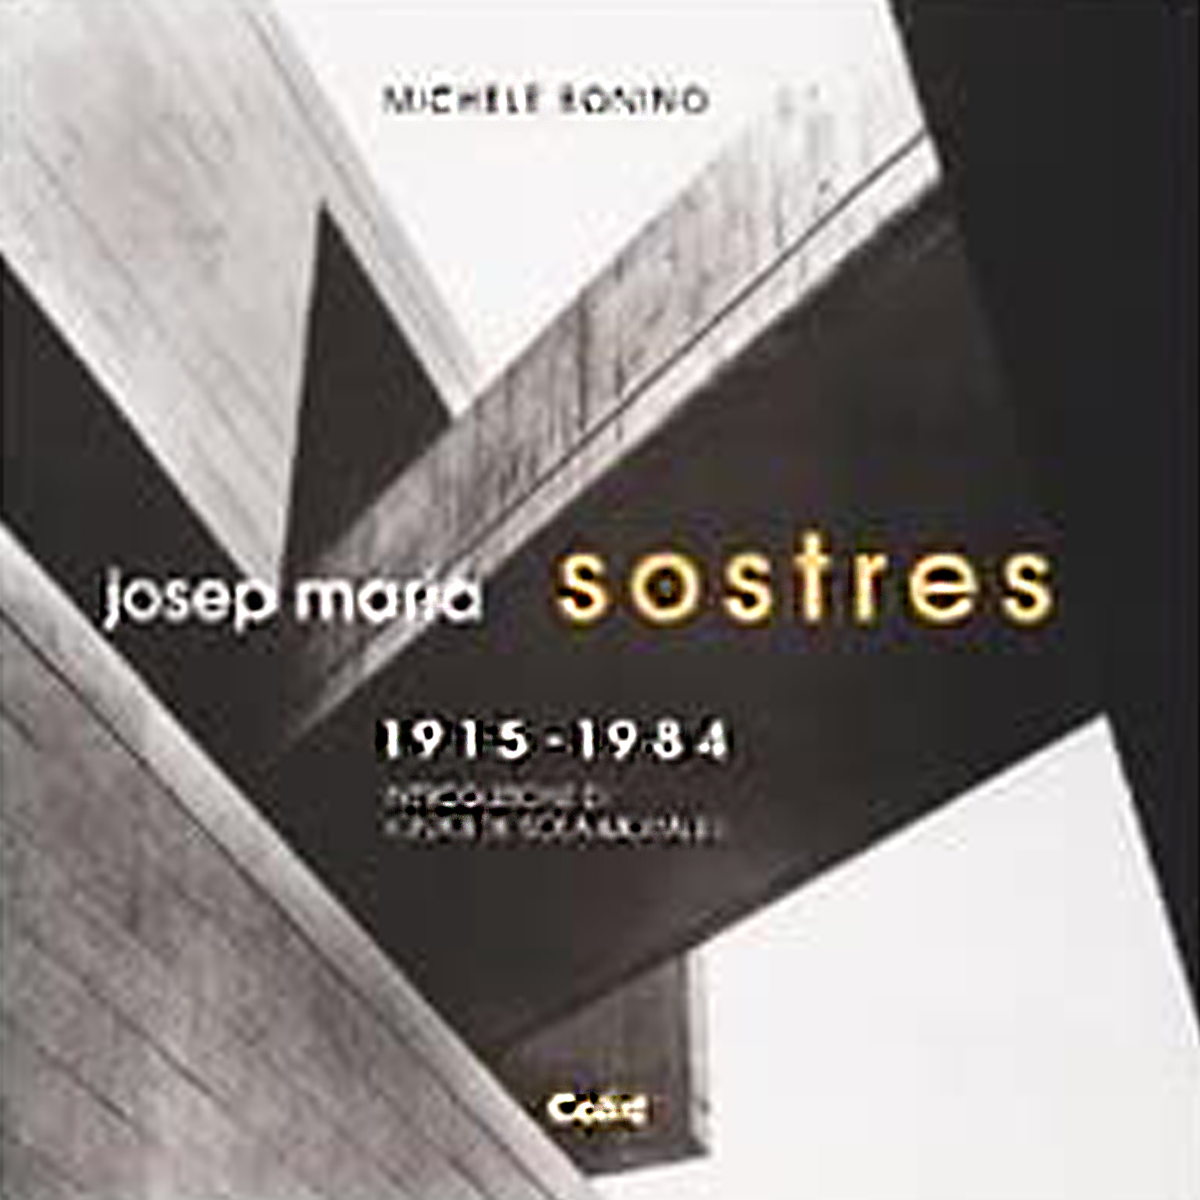 Josep Maria Sostres 